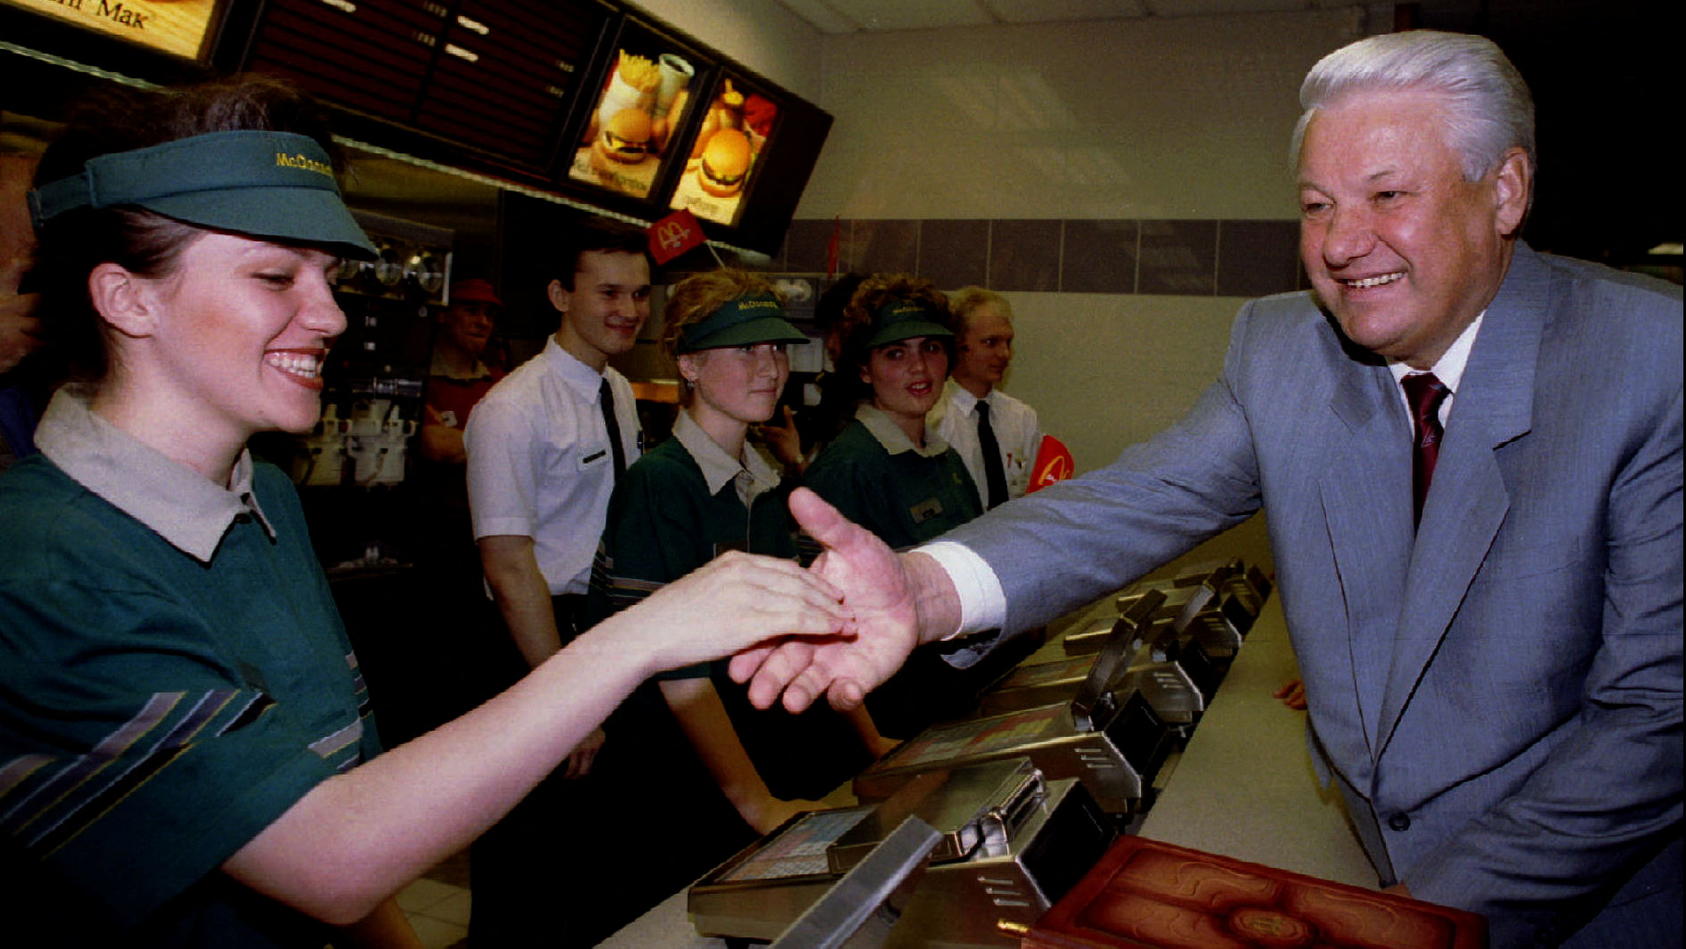 Der russische Präsident Boris Jelzin begrüßt im Jahr 1990 Mitarbeiterinnen und Mitarbeiter eines McDonald's-Restaurants bei der Eröffnung.